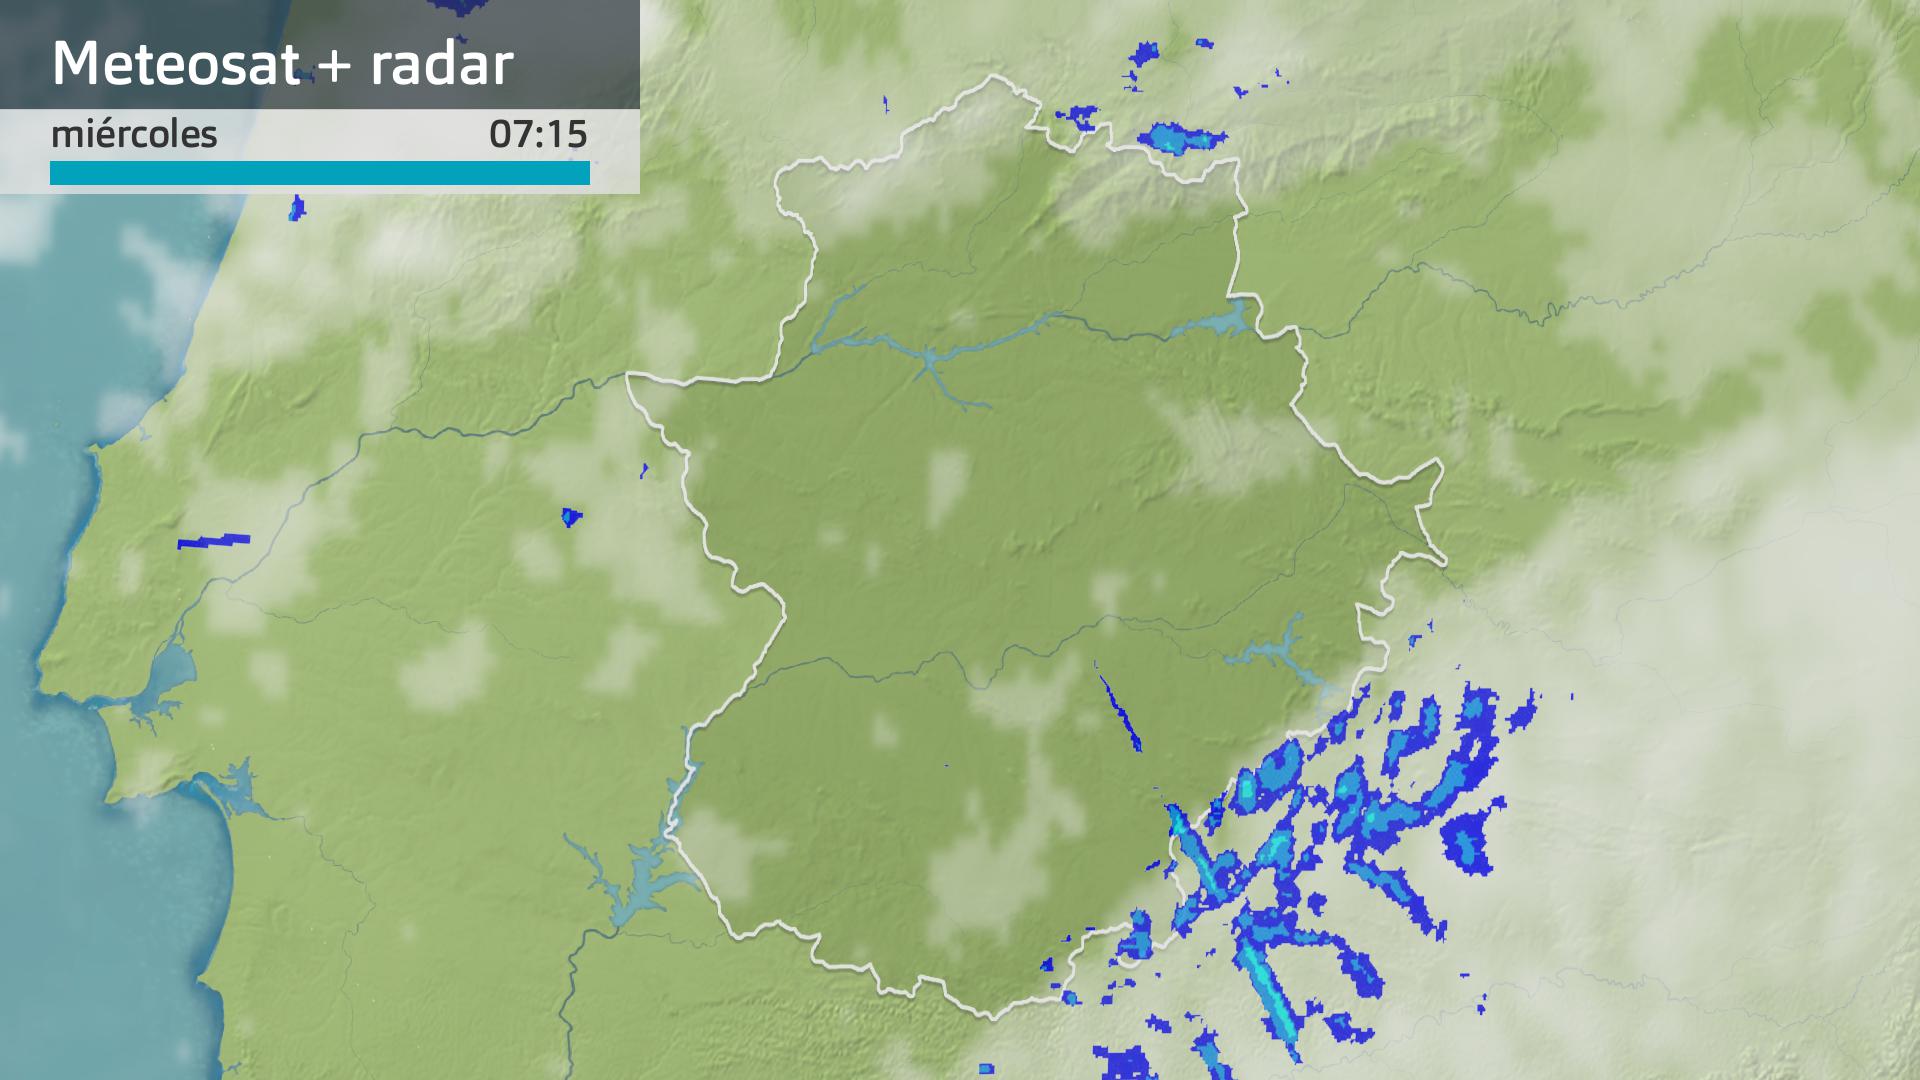 Imagen del Meteosat + radar meteorológico miércoles 1 de may0 7:15 h.